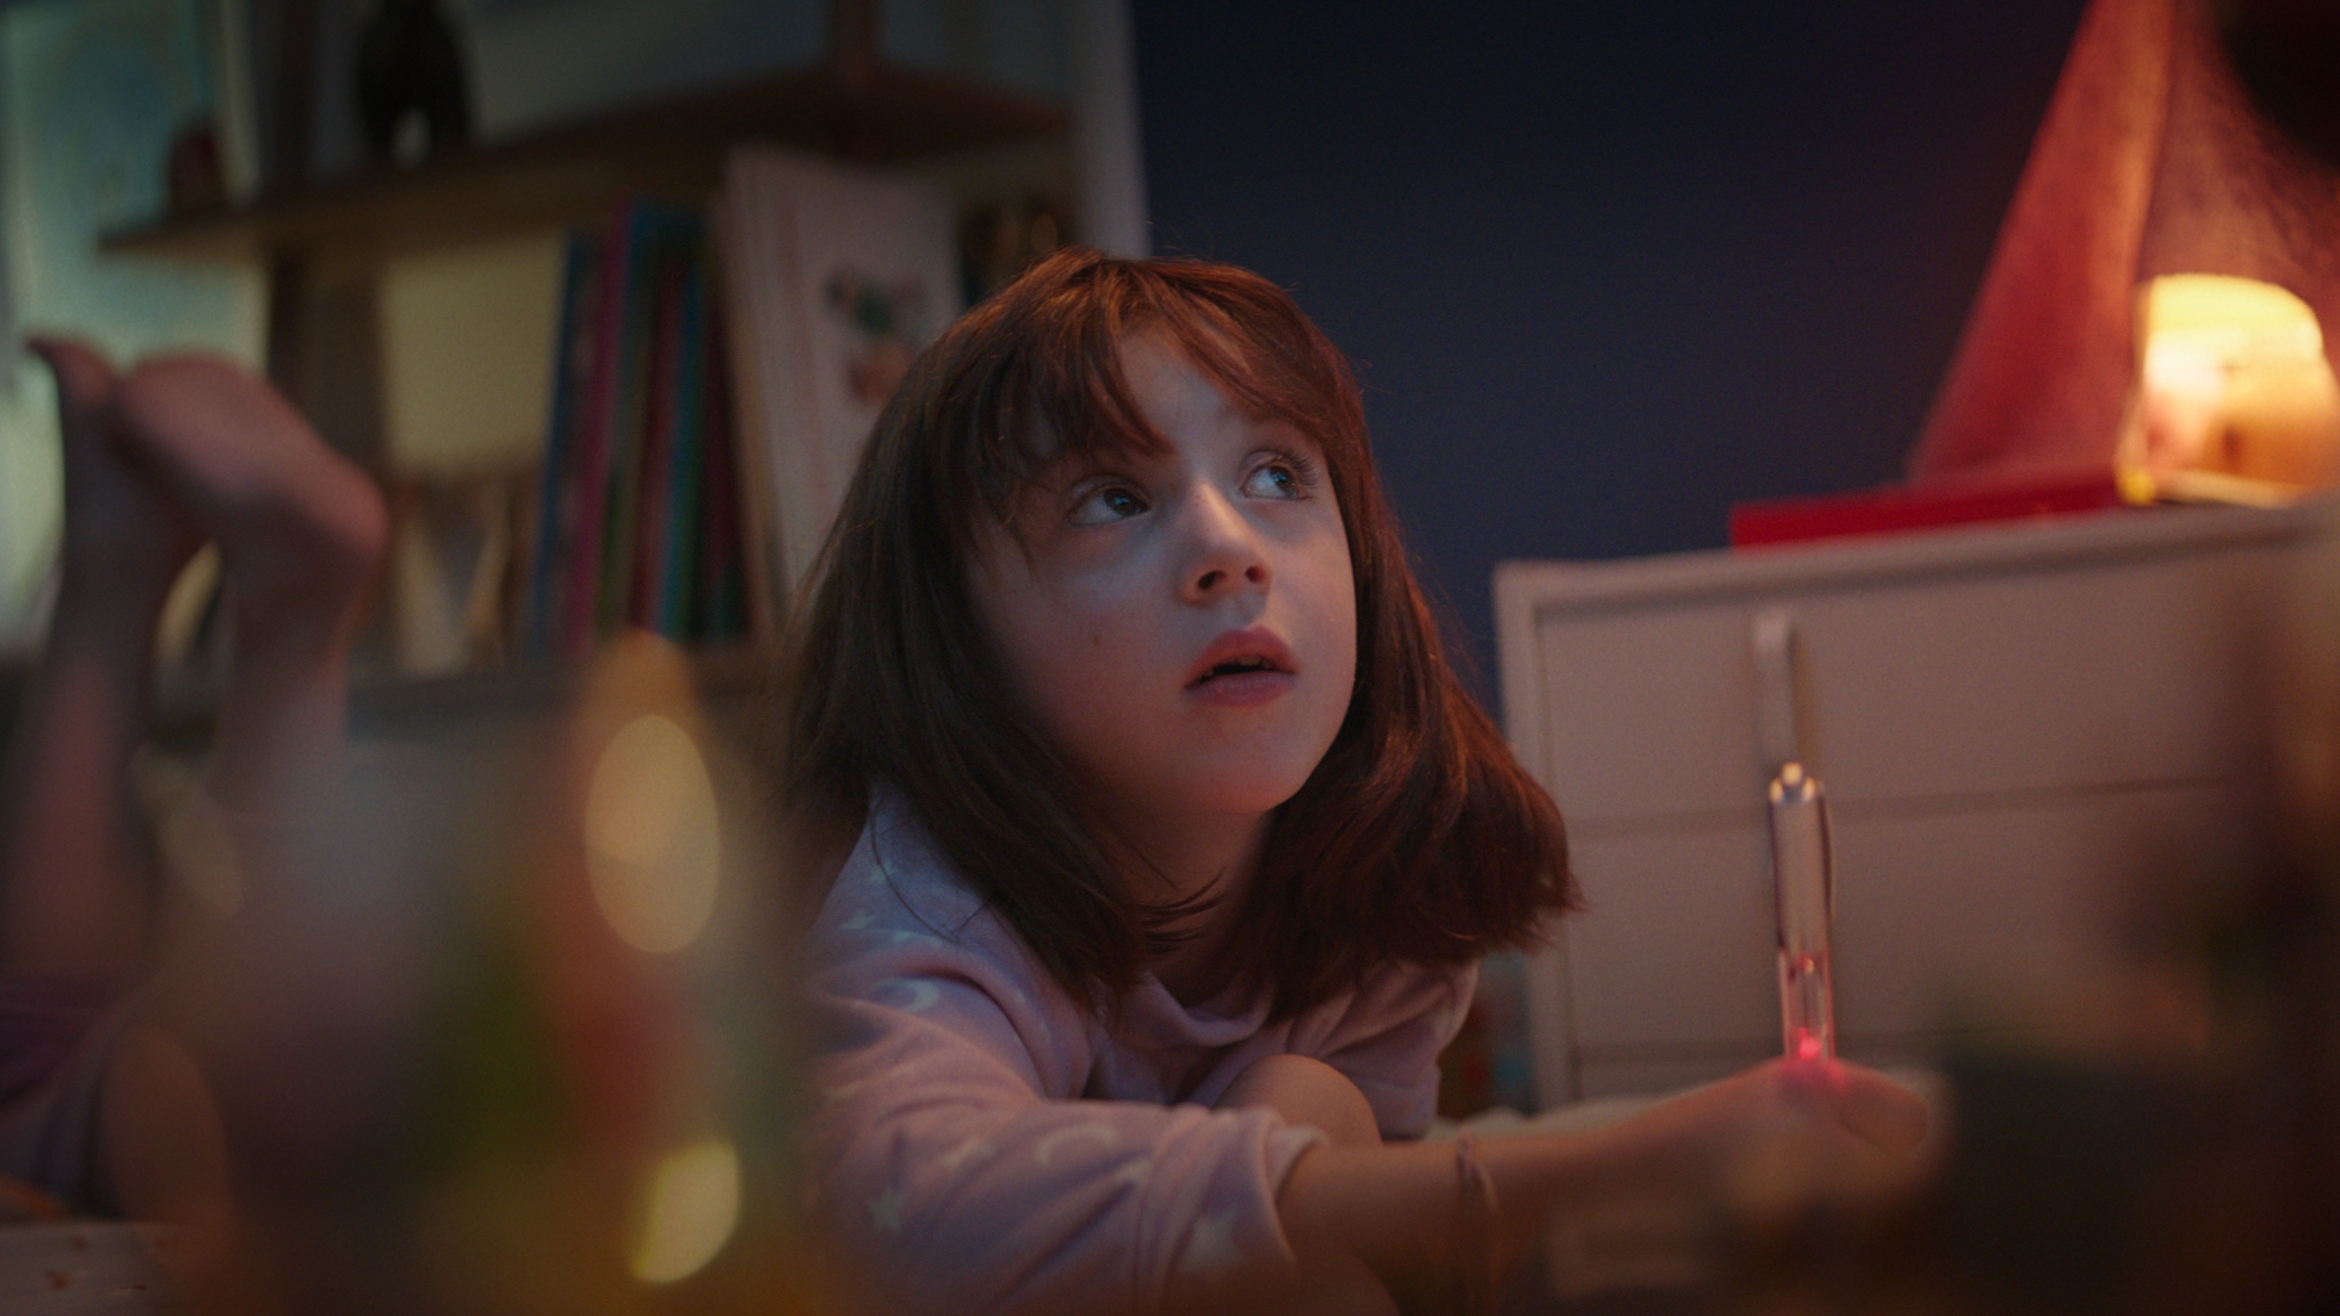 Der Film erzählt aus der Sicht eines kleinen Mädchens, wie Weihnachten 2020 wohl sein mag –